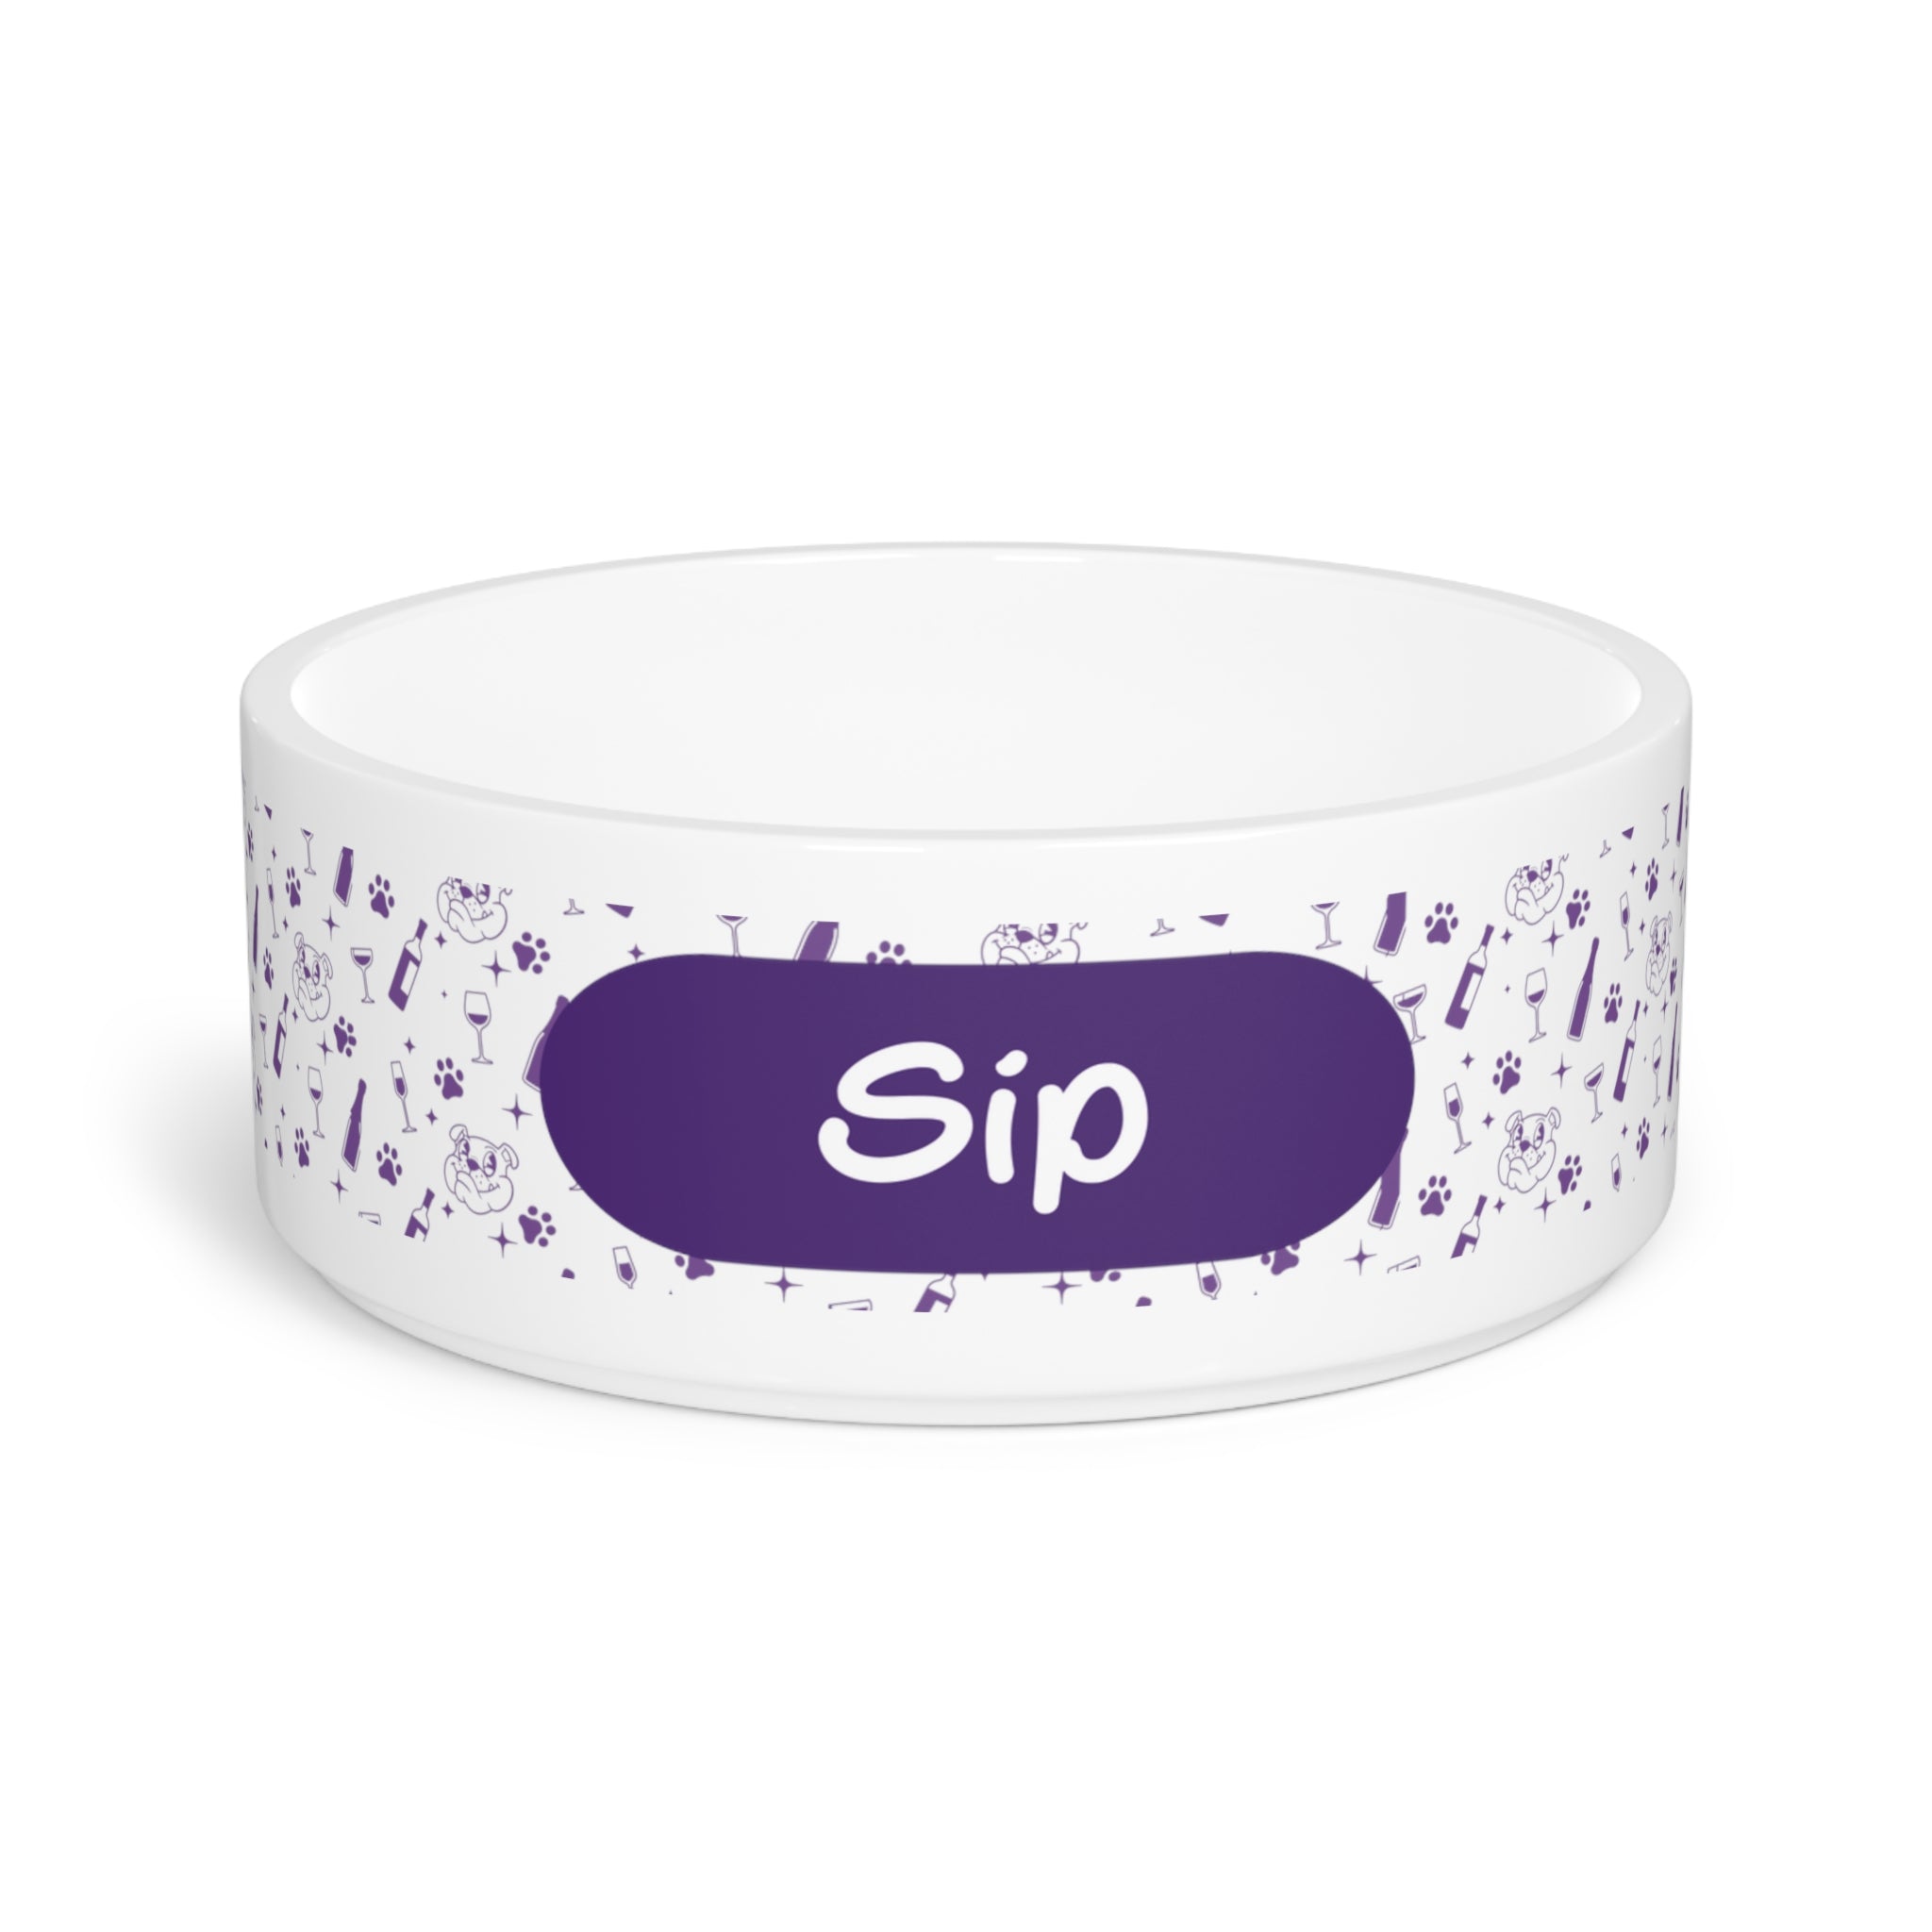 Tipsy Bully "Sip" Dog Water Bowl (Purple)